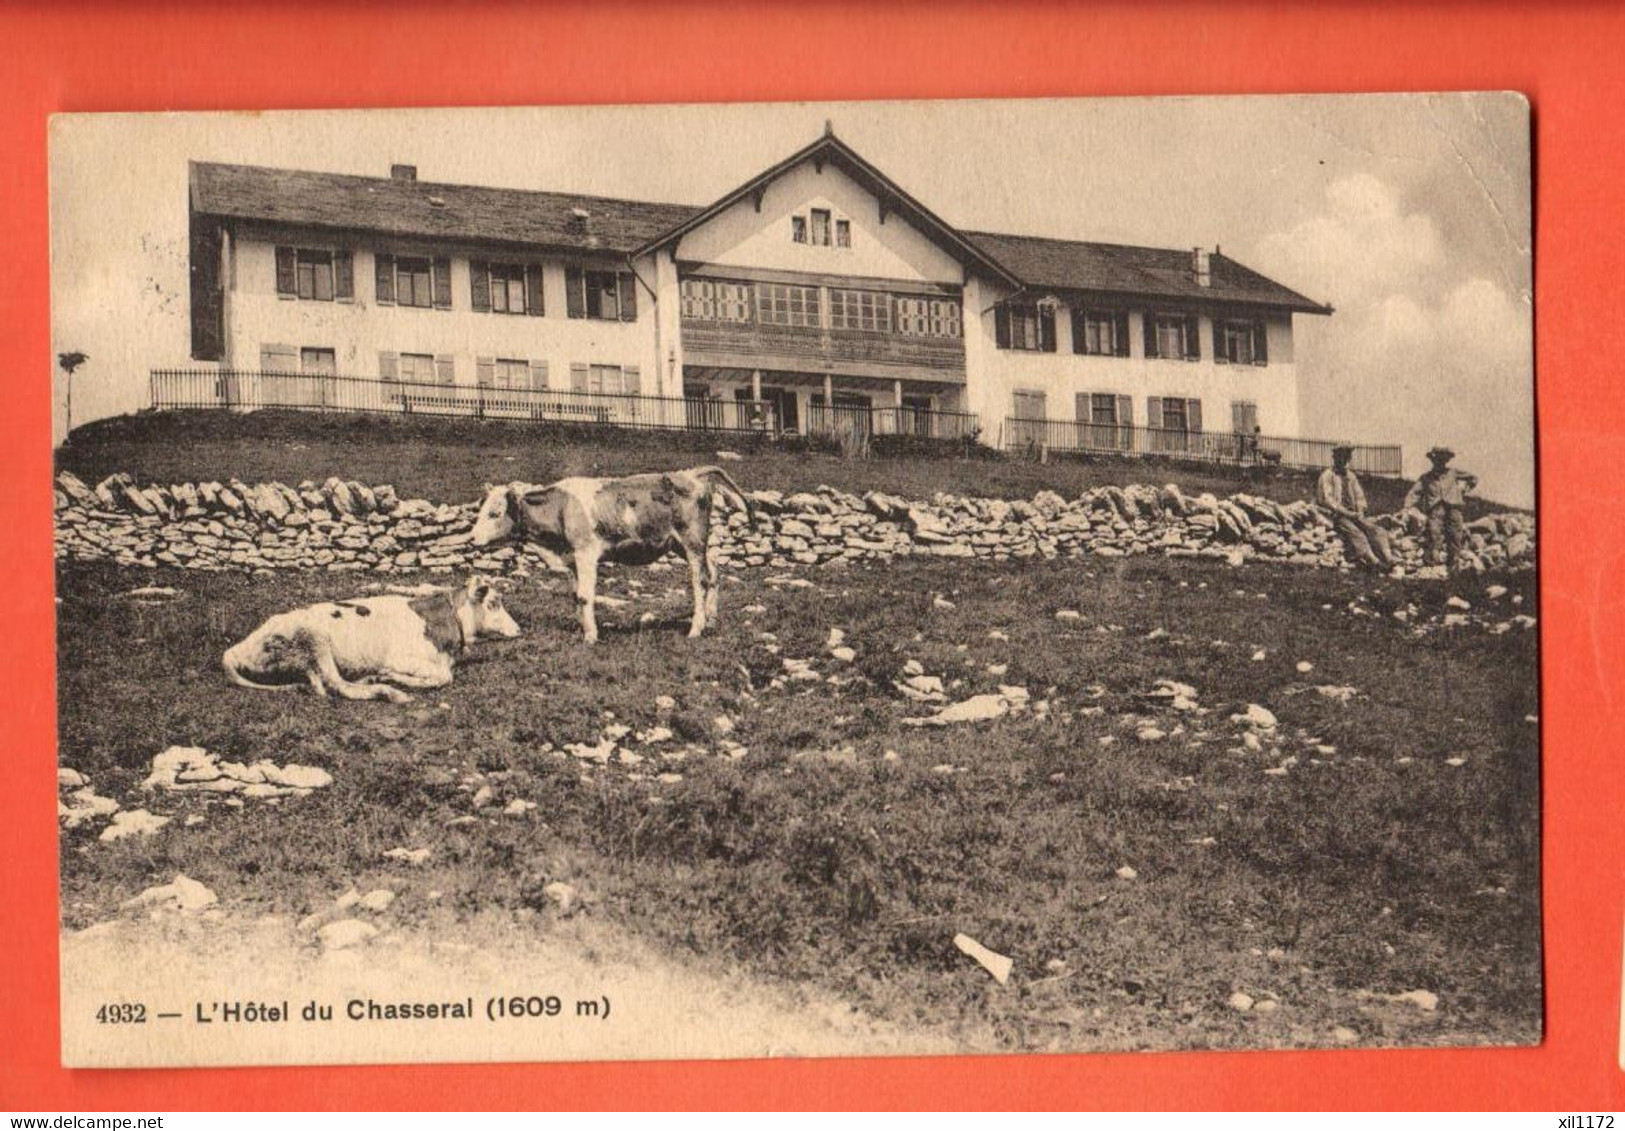 ZLF-04  L'Hôtel Du Chasseral, Troupeau De Vaches, ANIME. Tampon De L'Hôtel. Cachet St.-Imier 1914.Phototypie 4932 - Saint-Imier 